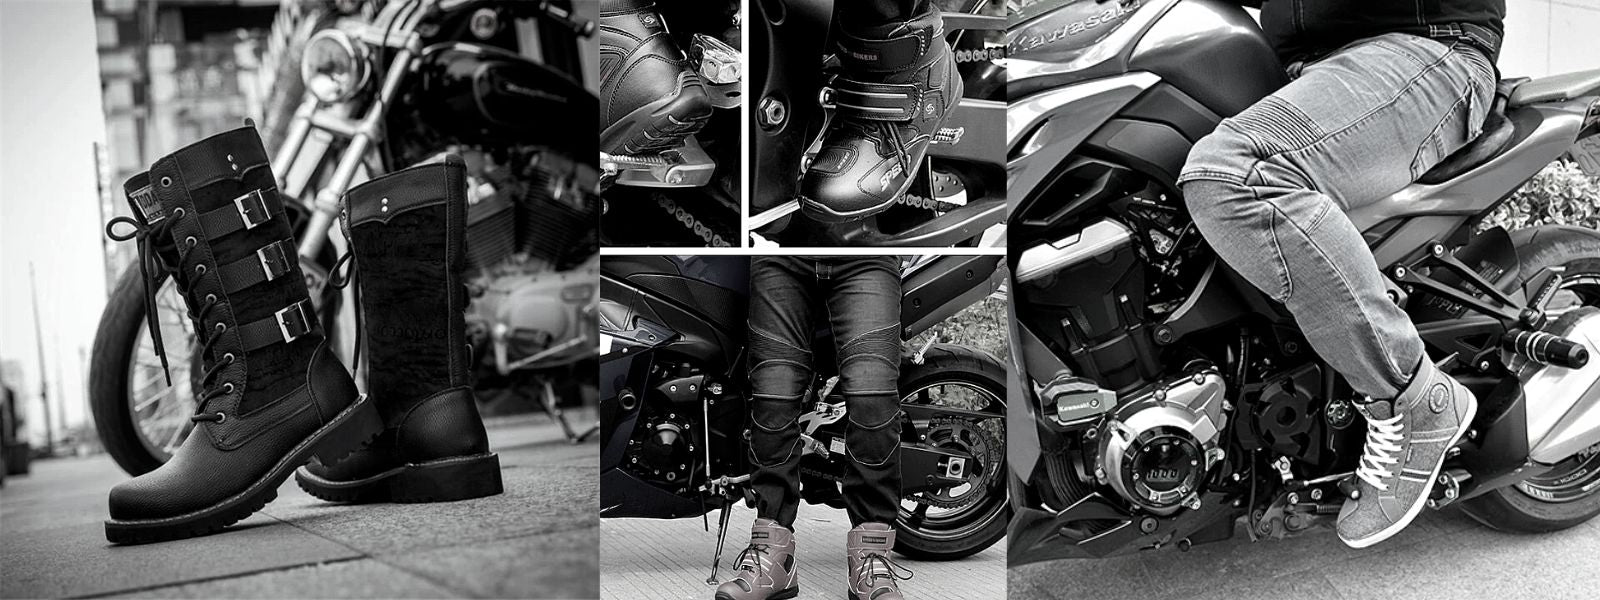 Comment Bien choisir Ses Bottes Et Chaussures Moto : Guide